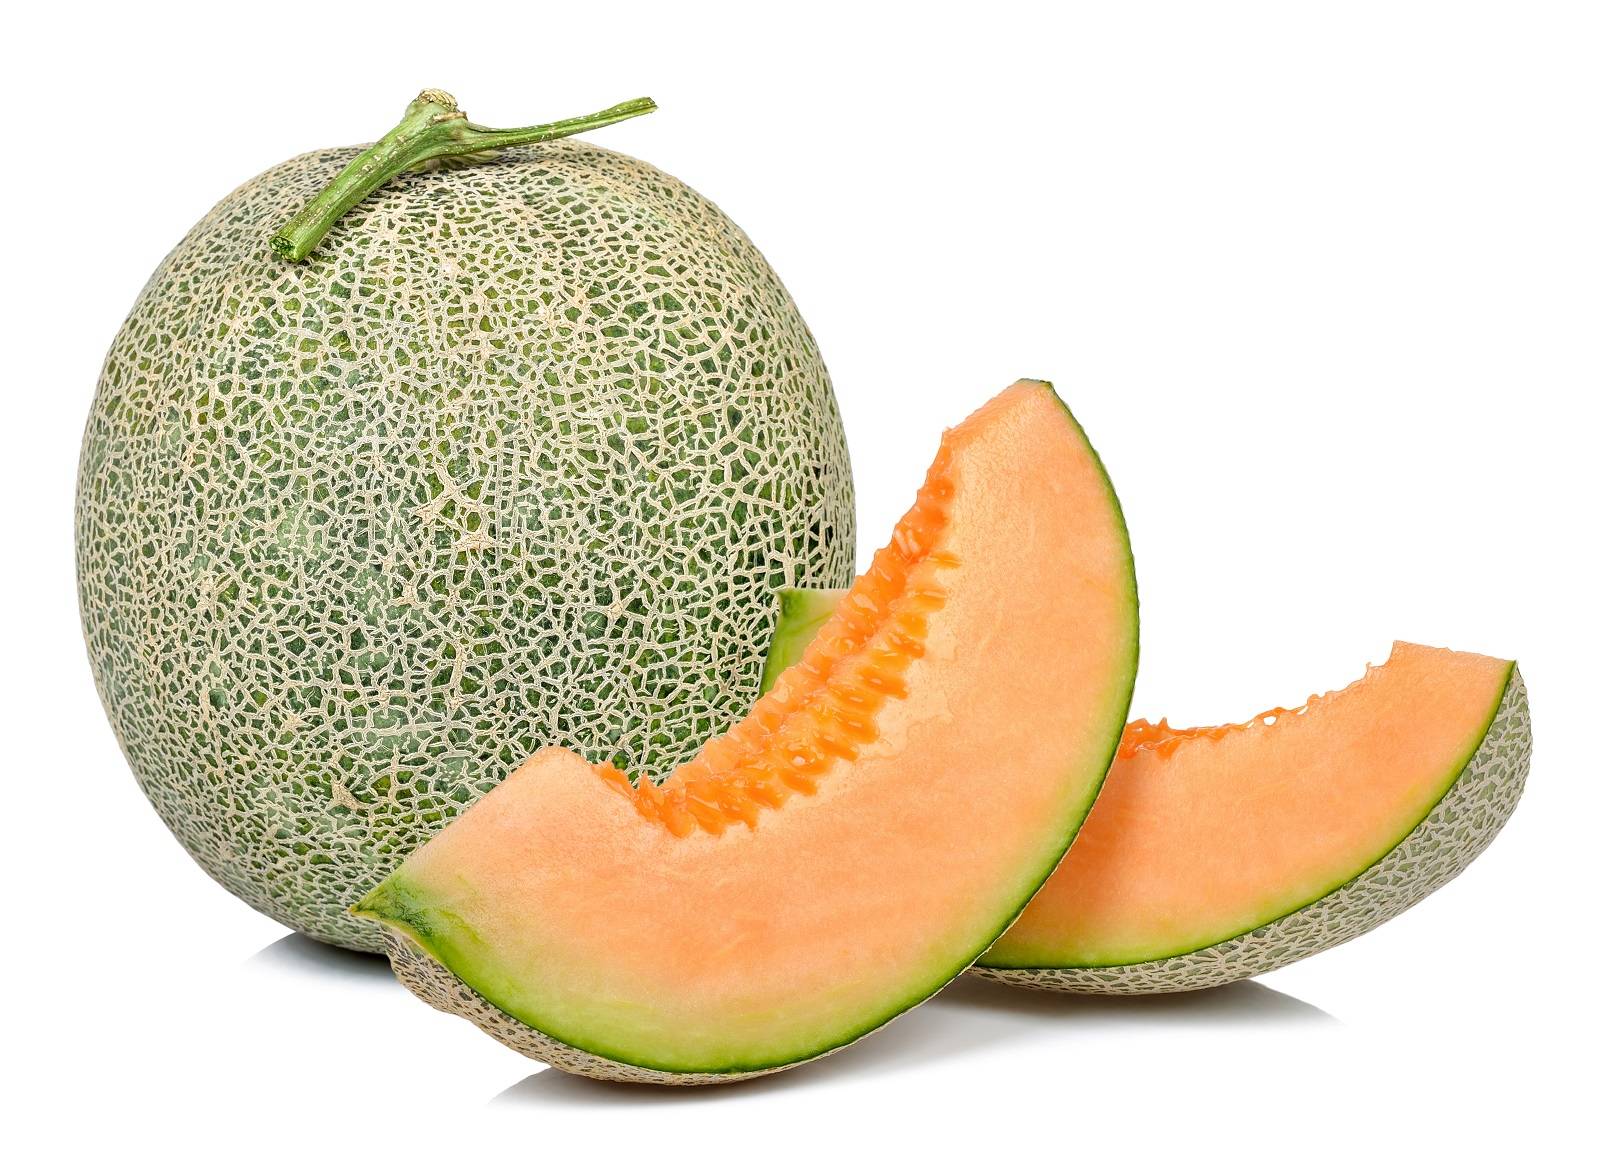 l_gantaloupmelone Südfrüchte - Cantaloupe-Melone - Hofladen Altkö